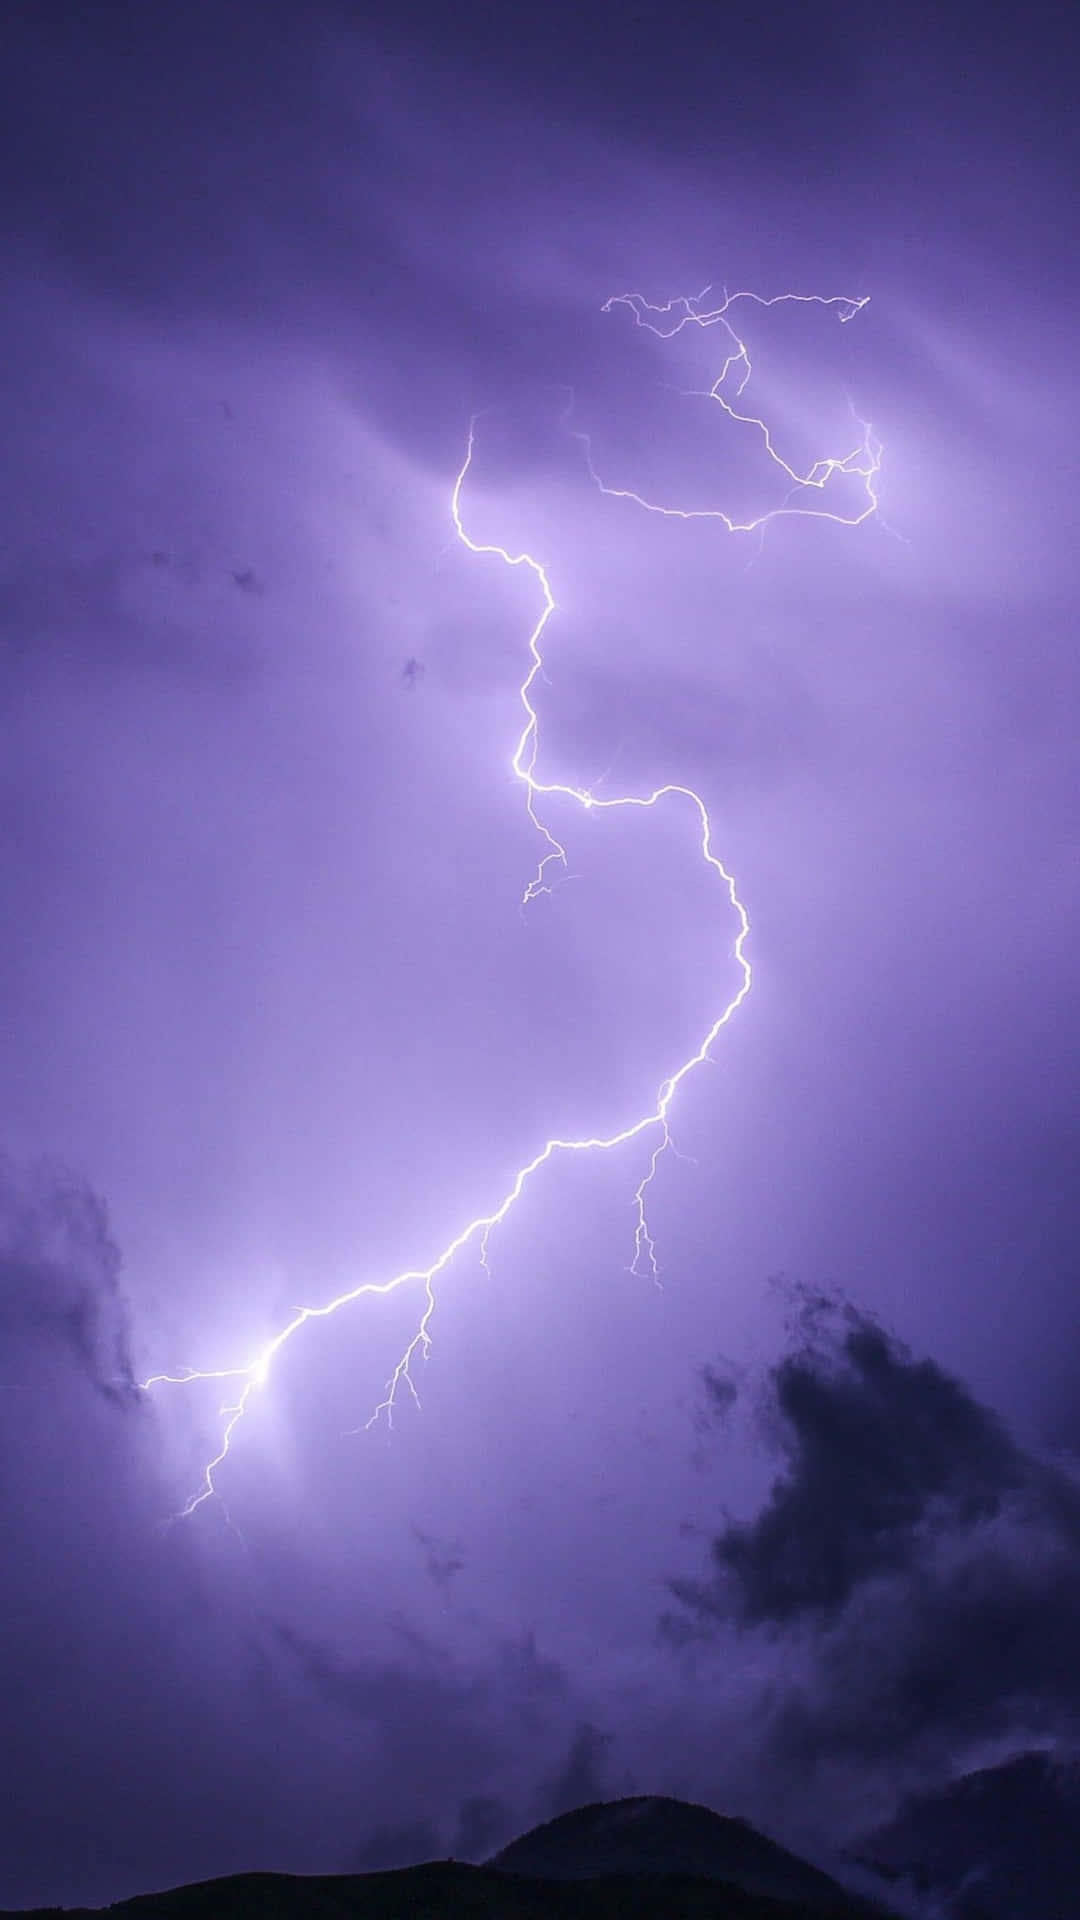 Lilablixtslag På Himmelen. (purple Lightning Strike In The Sky.) Wallpaper